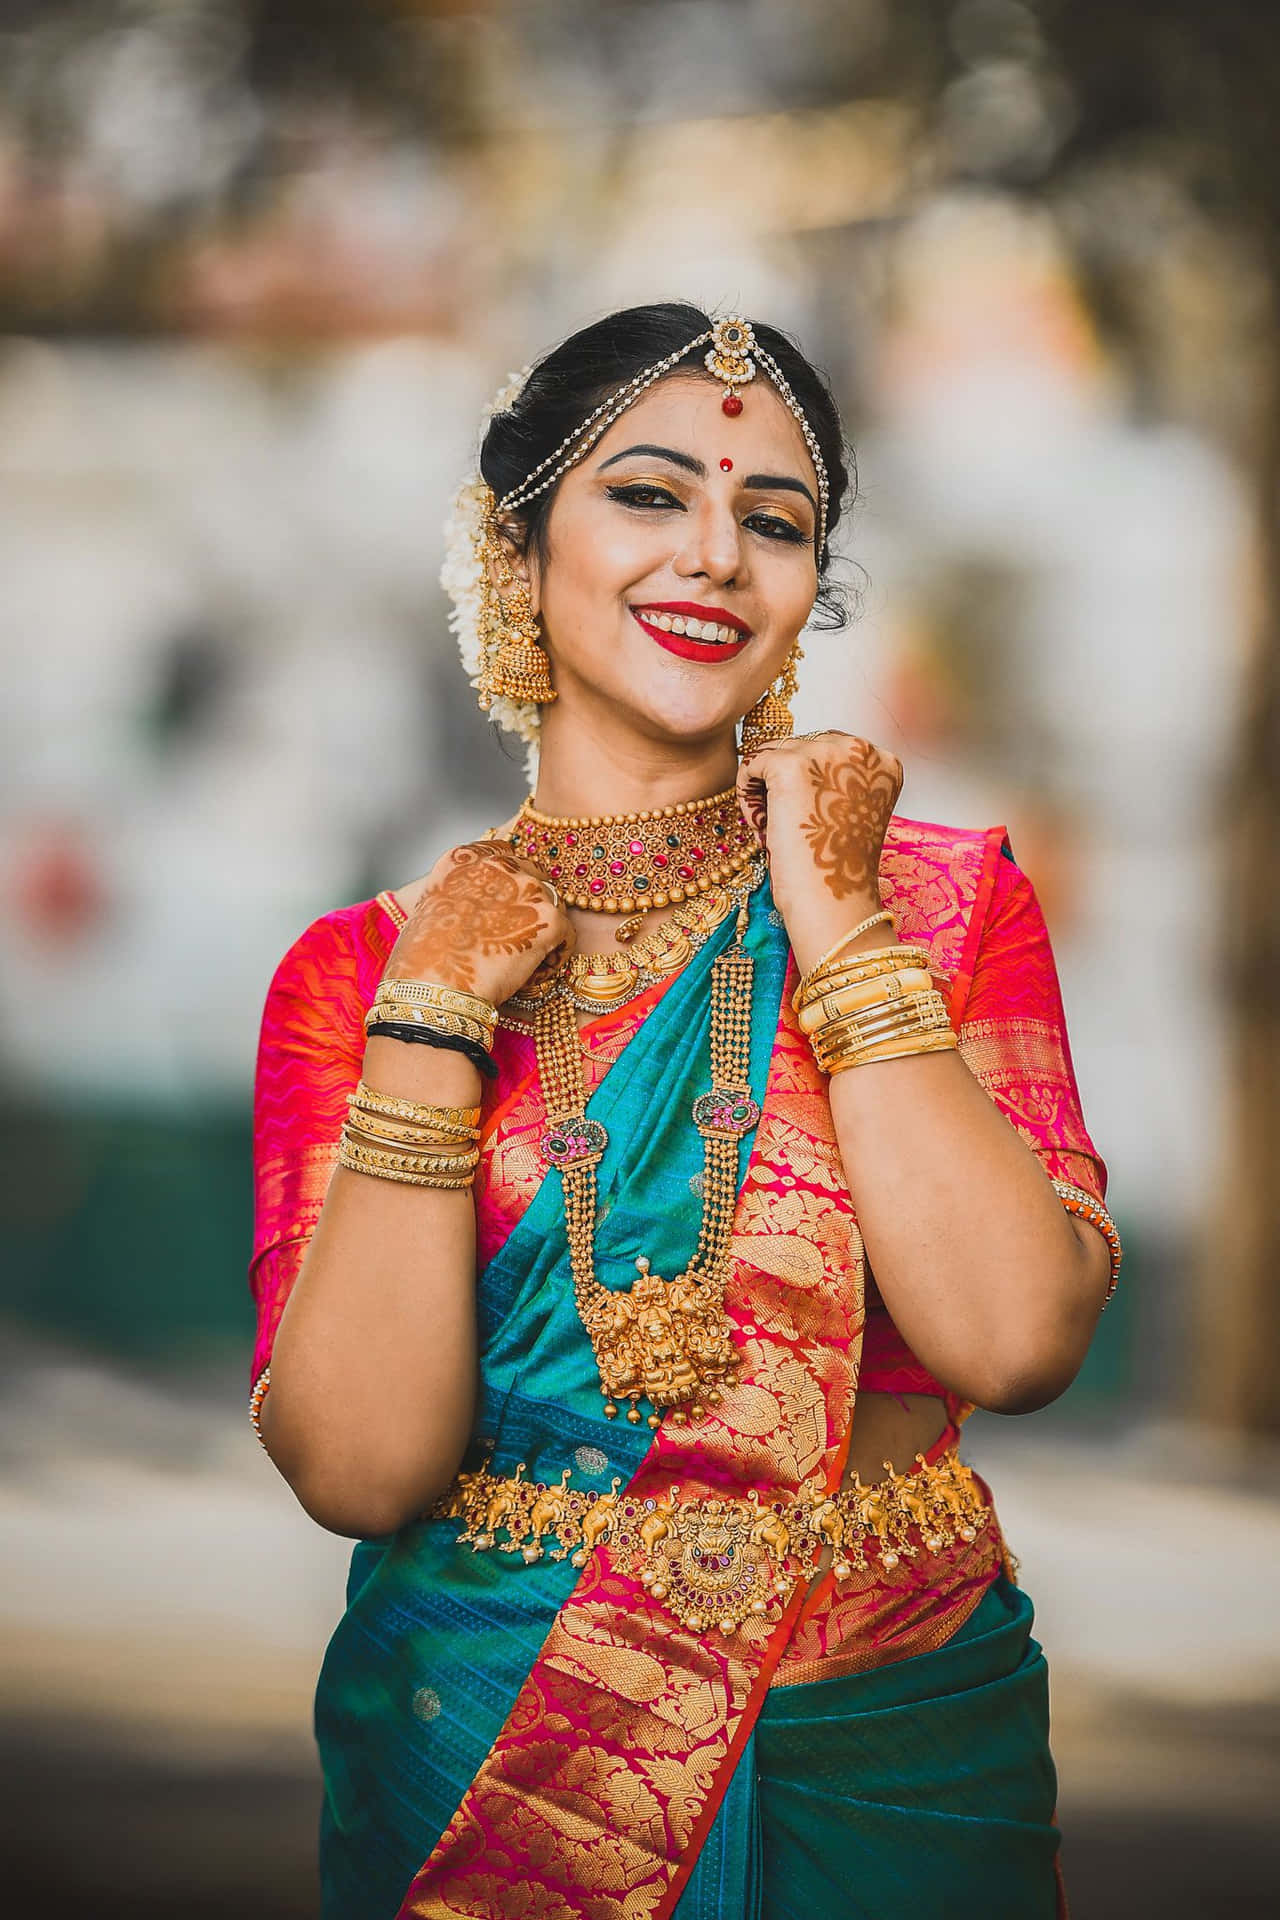 An Indian Bride in Her Dazzling Wedding Attire